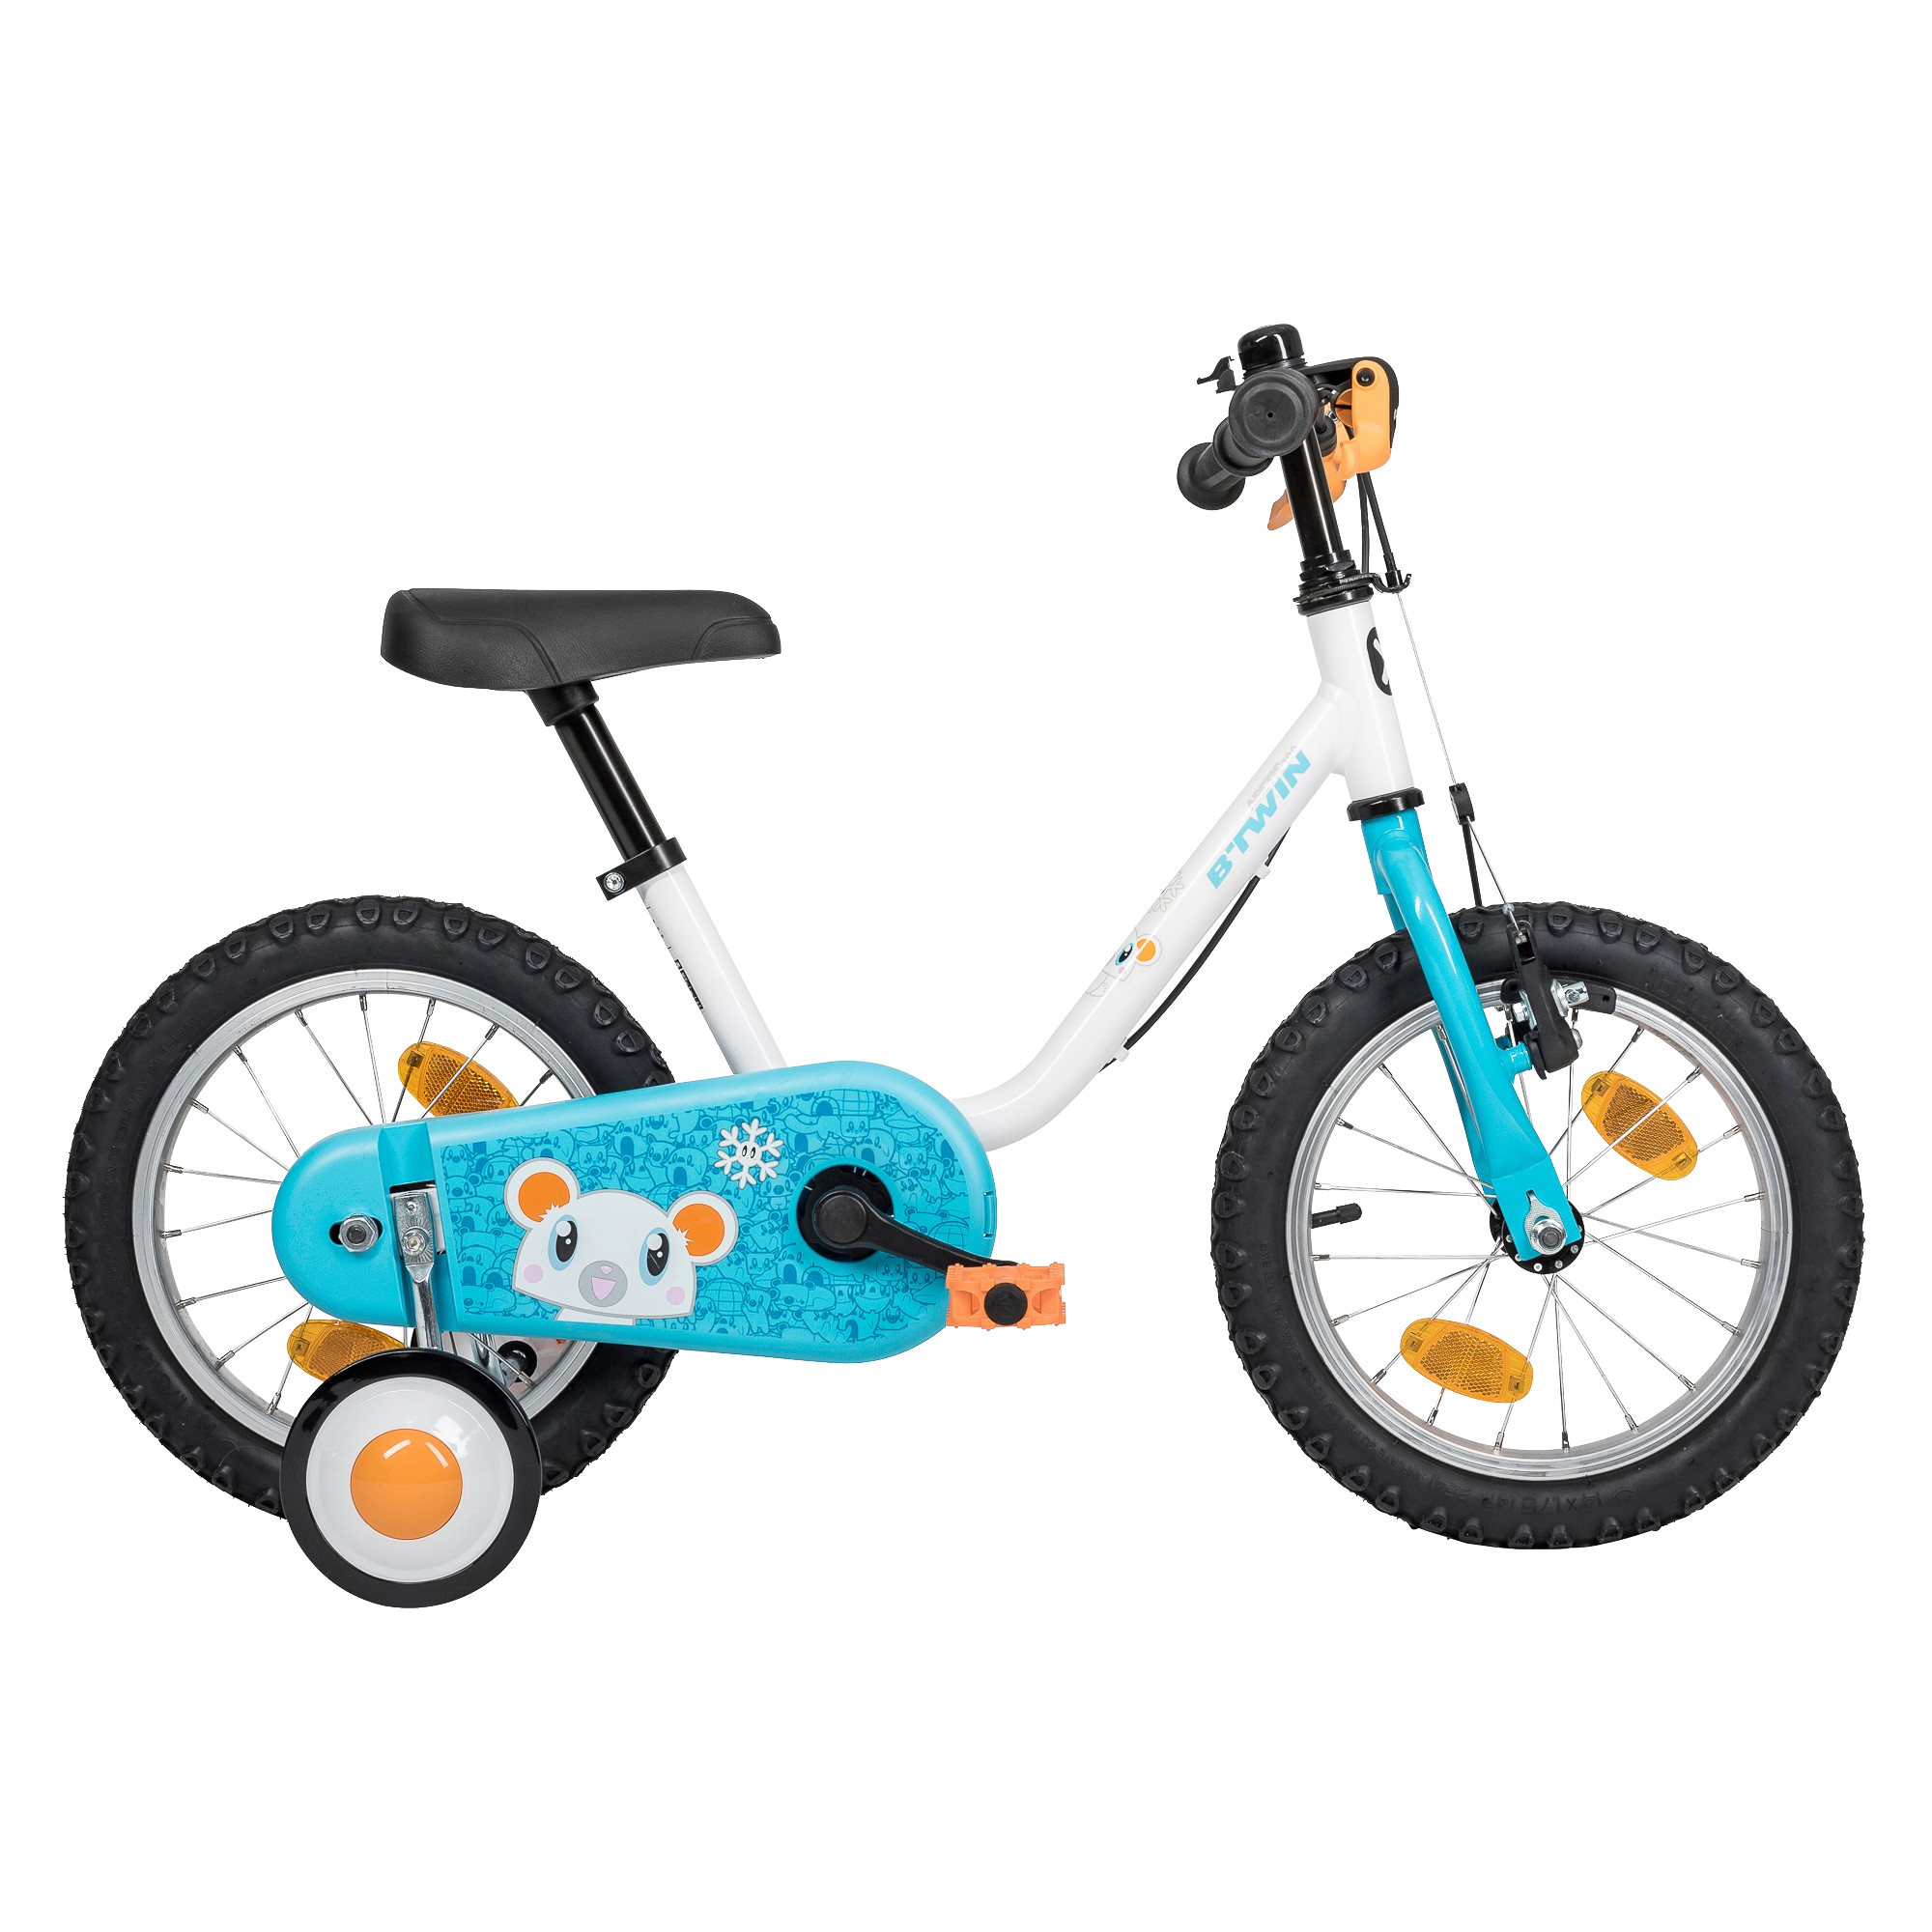 אופני ילדים DECATHLON מחיר: 450 שח | צילום: יח"צ דקטלון